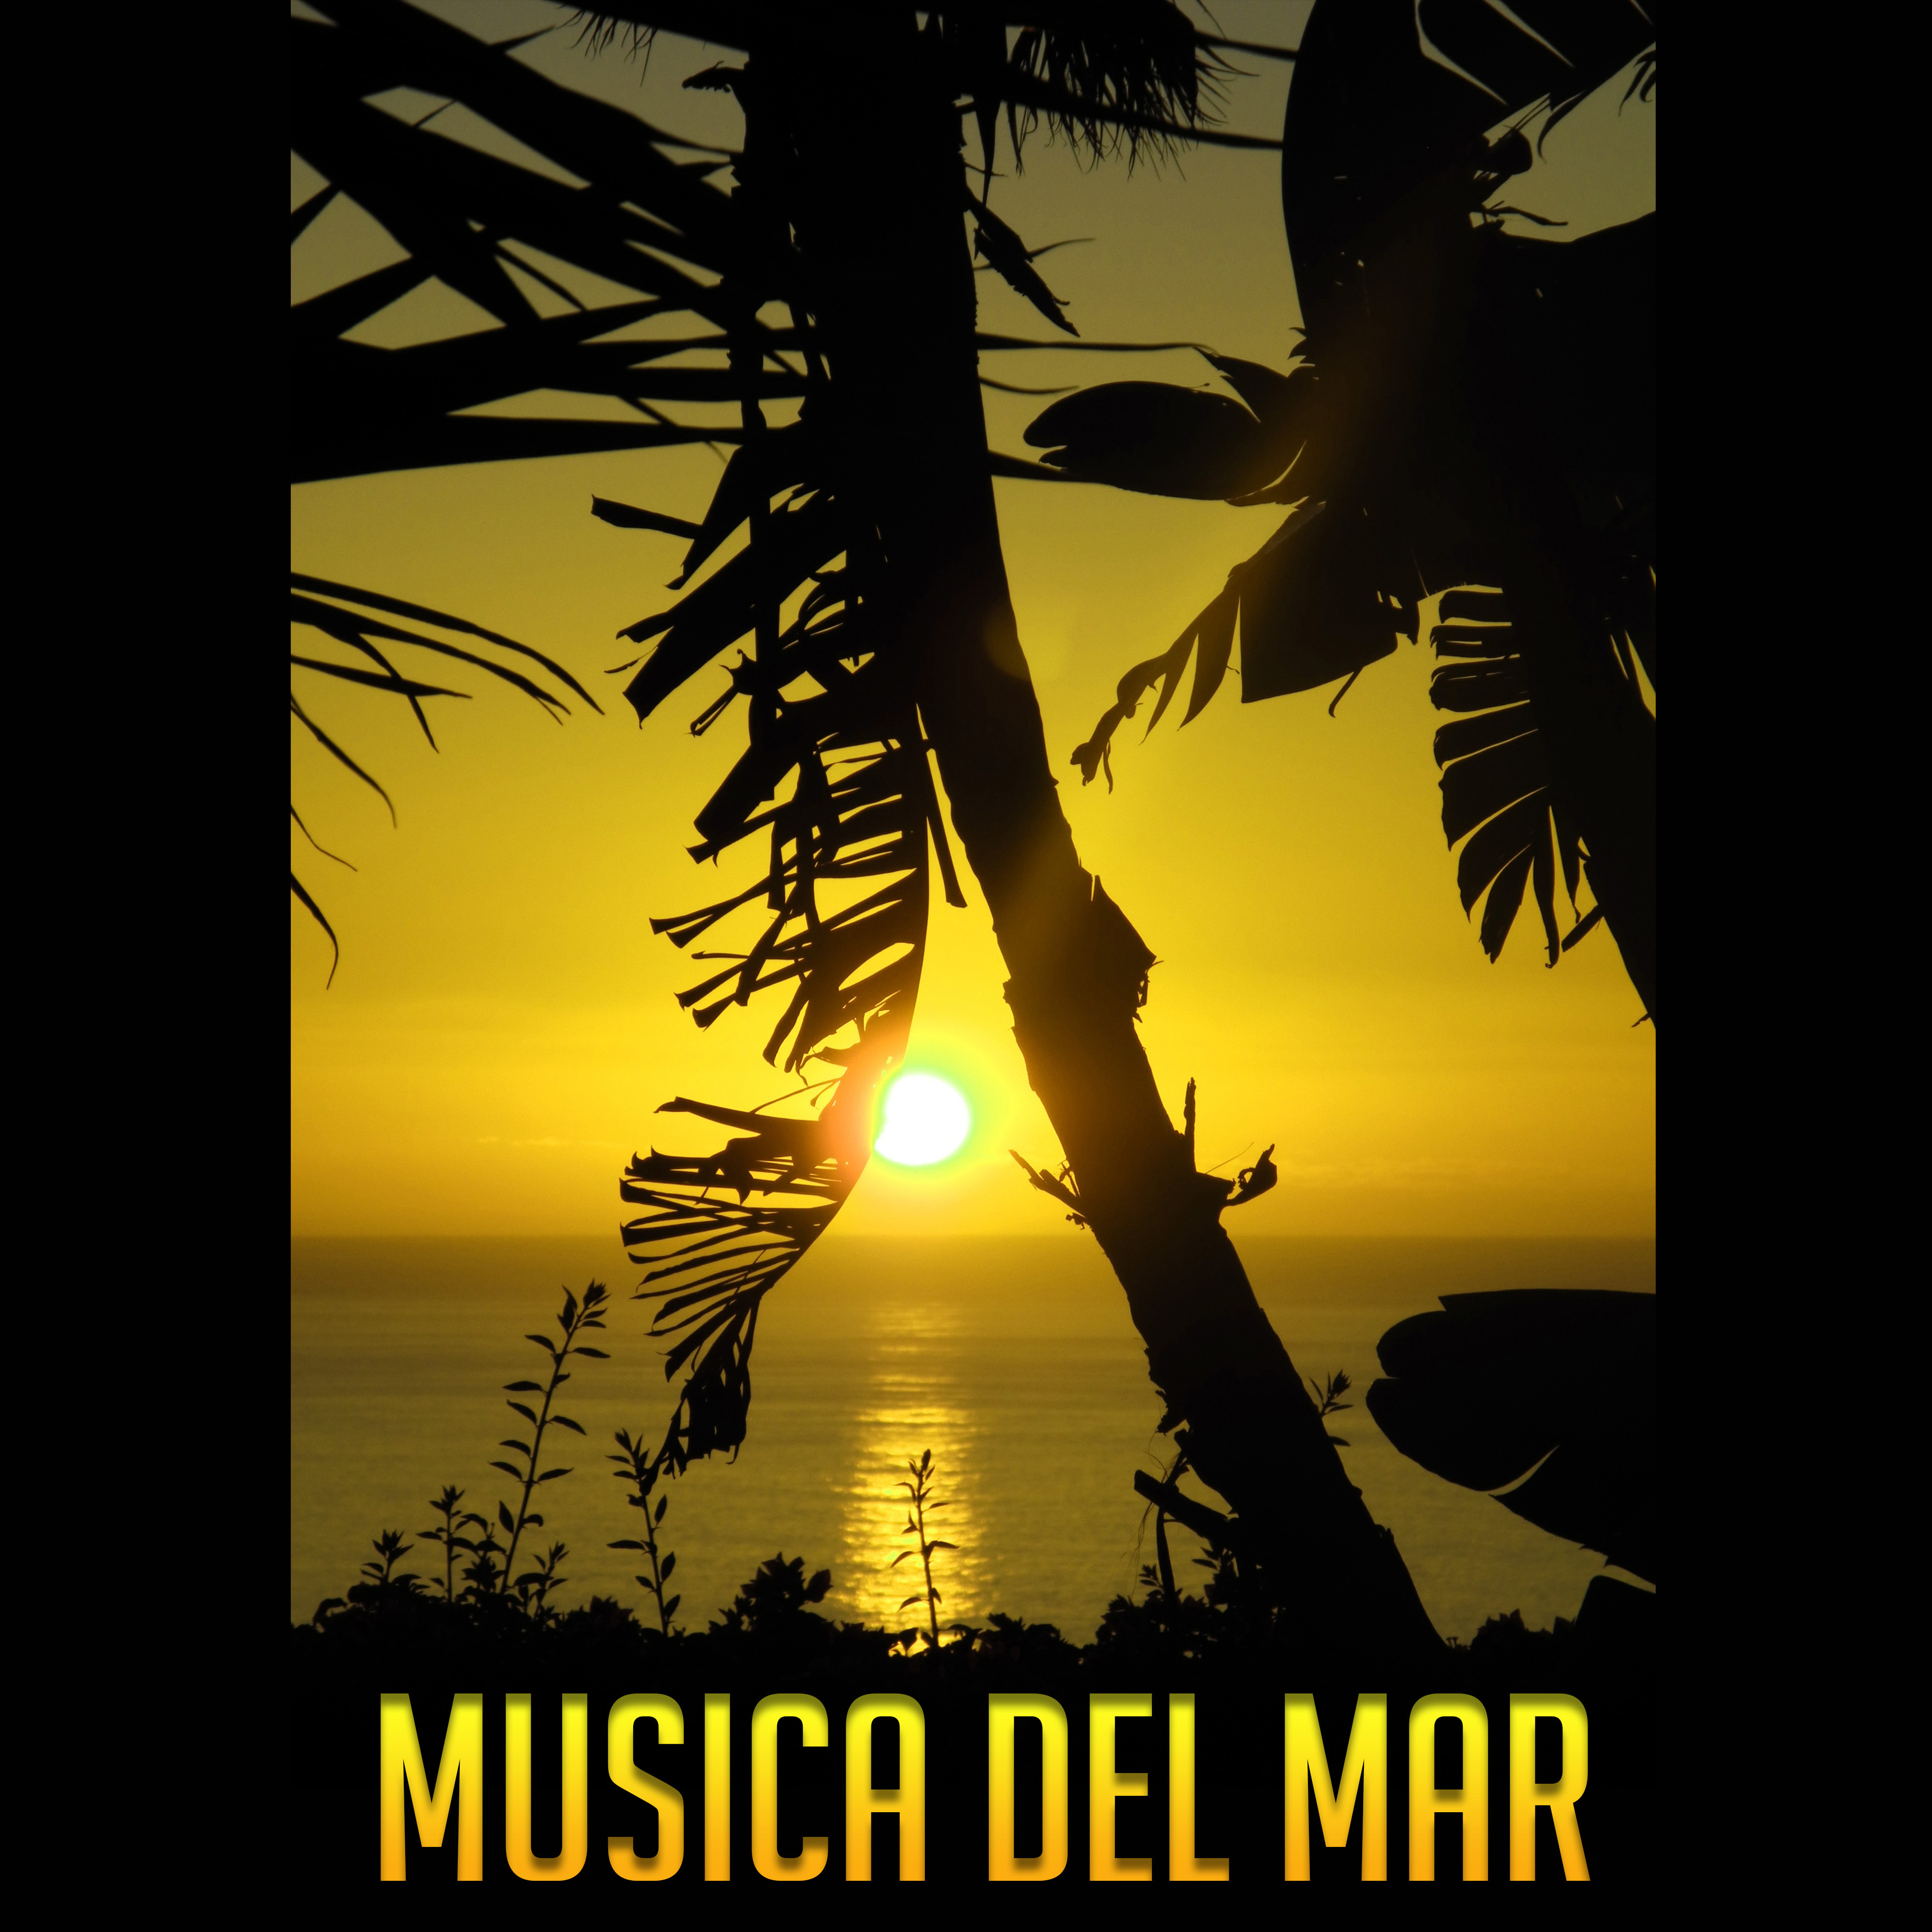 Musica Del Mar– Verano Música Lounge de Chillout, Musica de Ambiente, Rethymnon Chillout